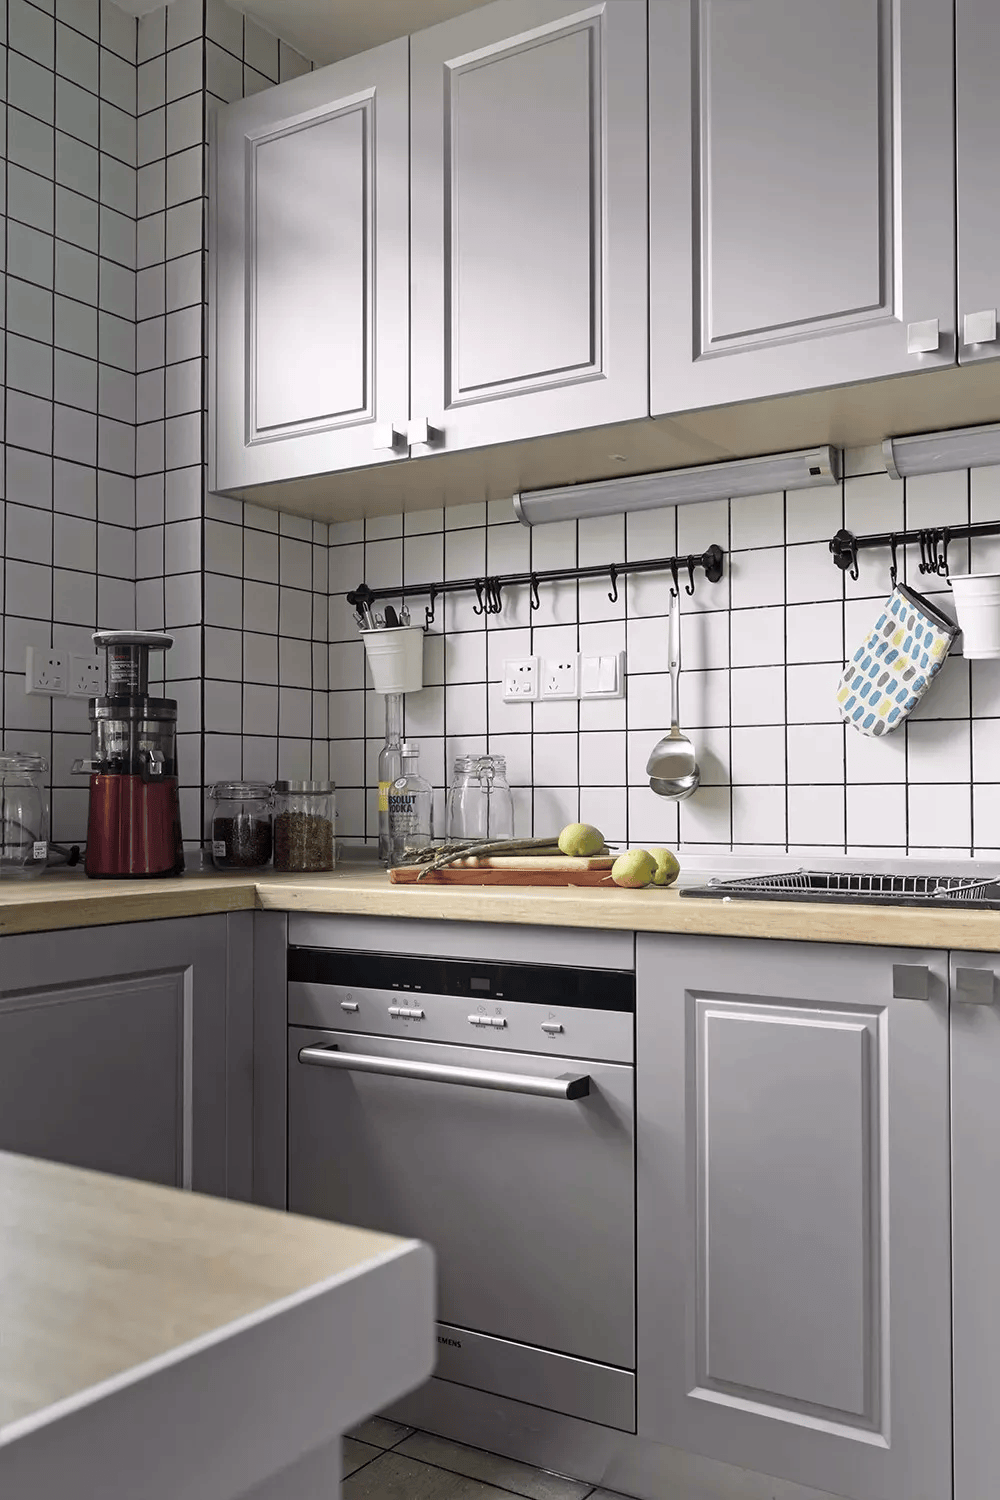 一个颜值出众的厨房,关键在于橱柜的色彩选择,地面与墙砖的款式搭配